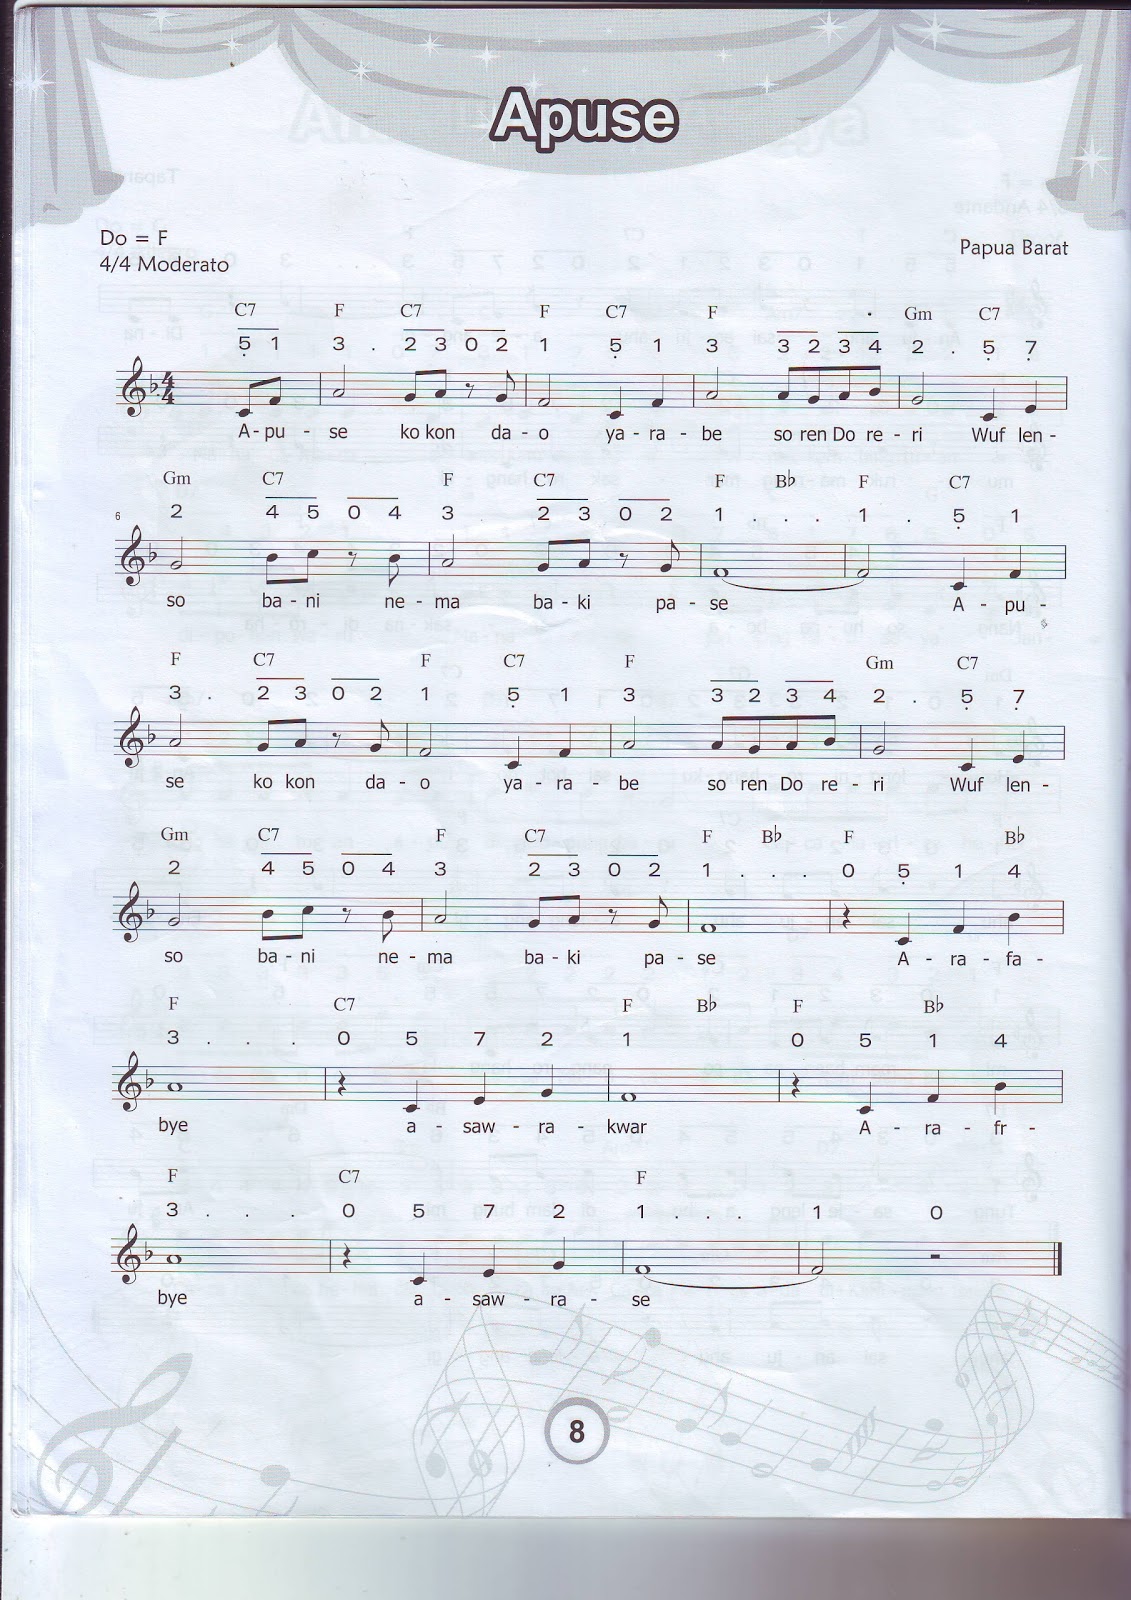 Selembar kertas yang mengubah komposisi musik menjadi teks lagu atau notasi disebut